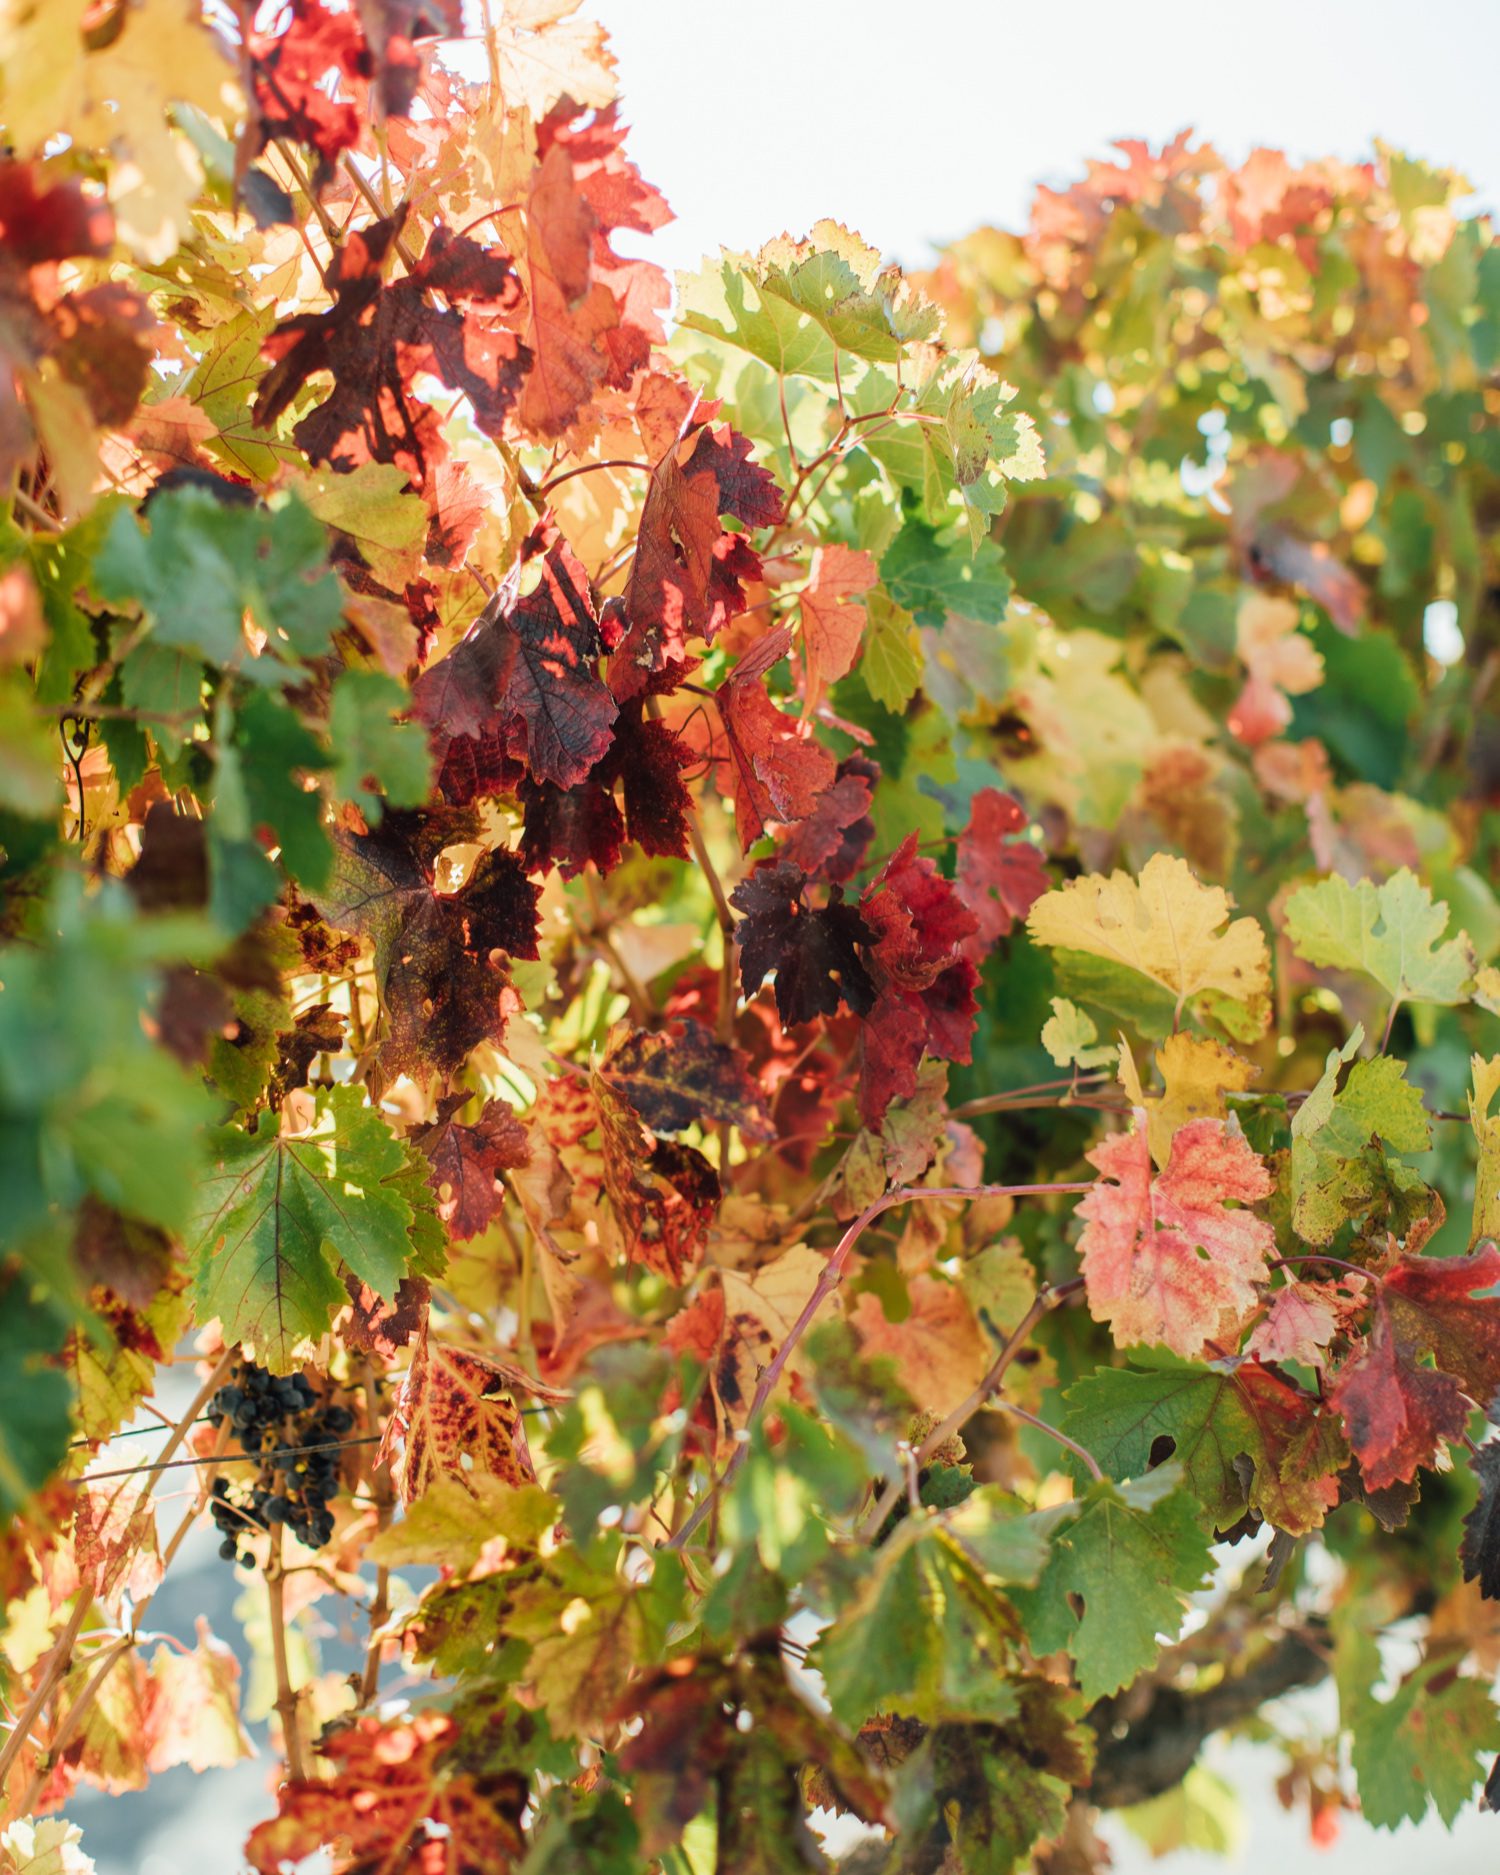 Fall leaves in California Vineyard